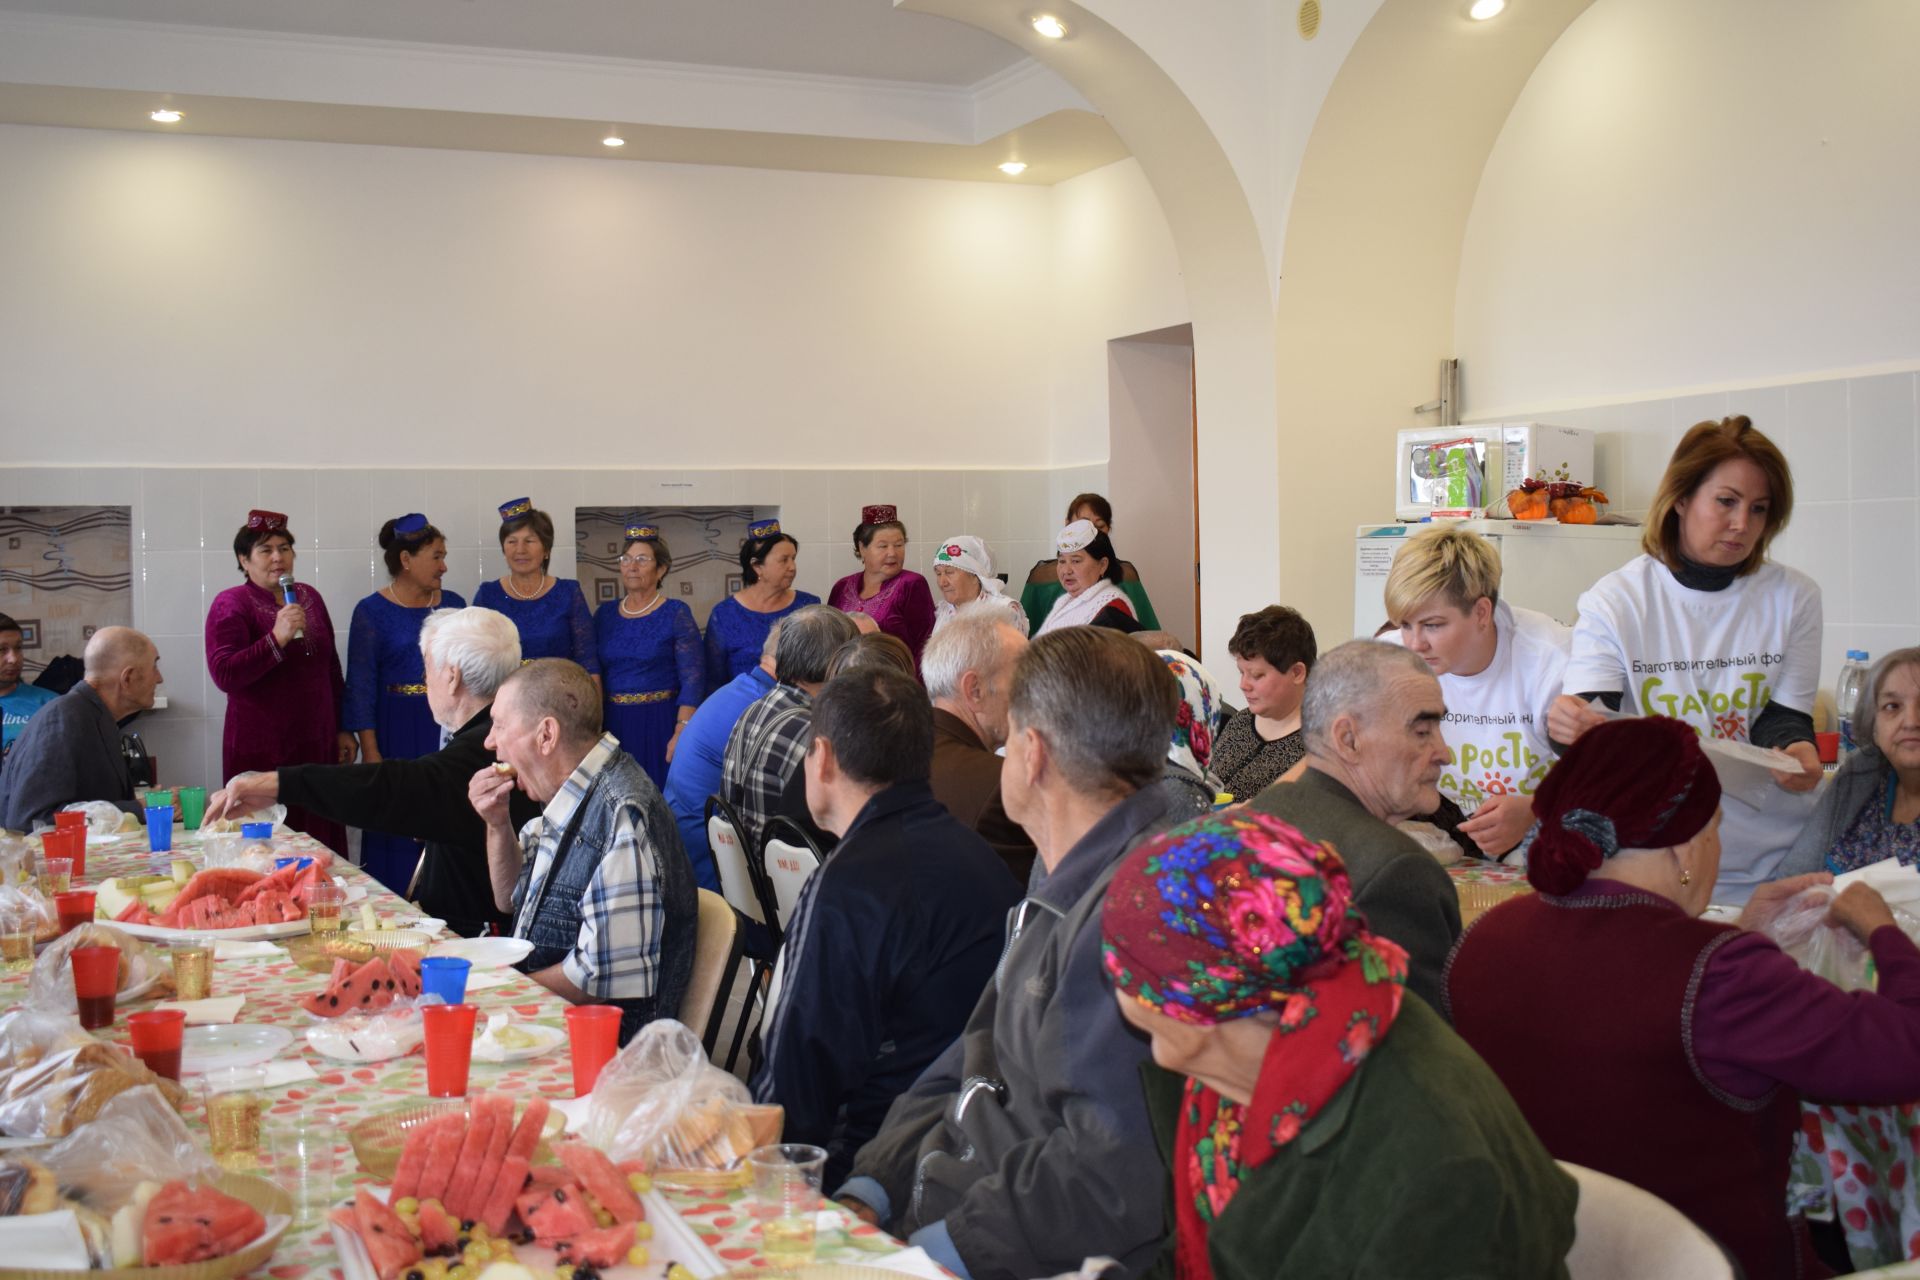 Ветераны и волонтеры Азнакаево организовали в доме для престарелых и инвалидов праздник - ФОТО